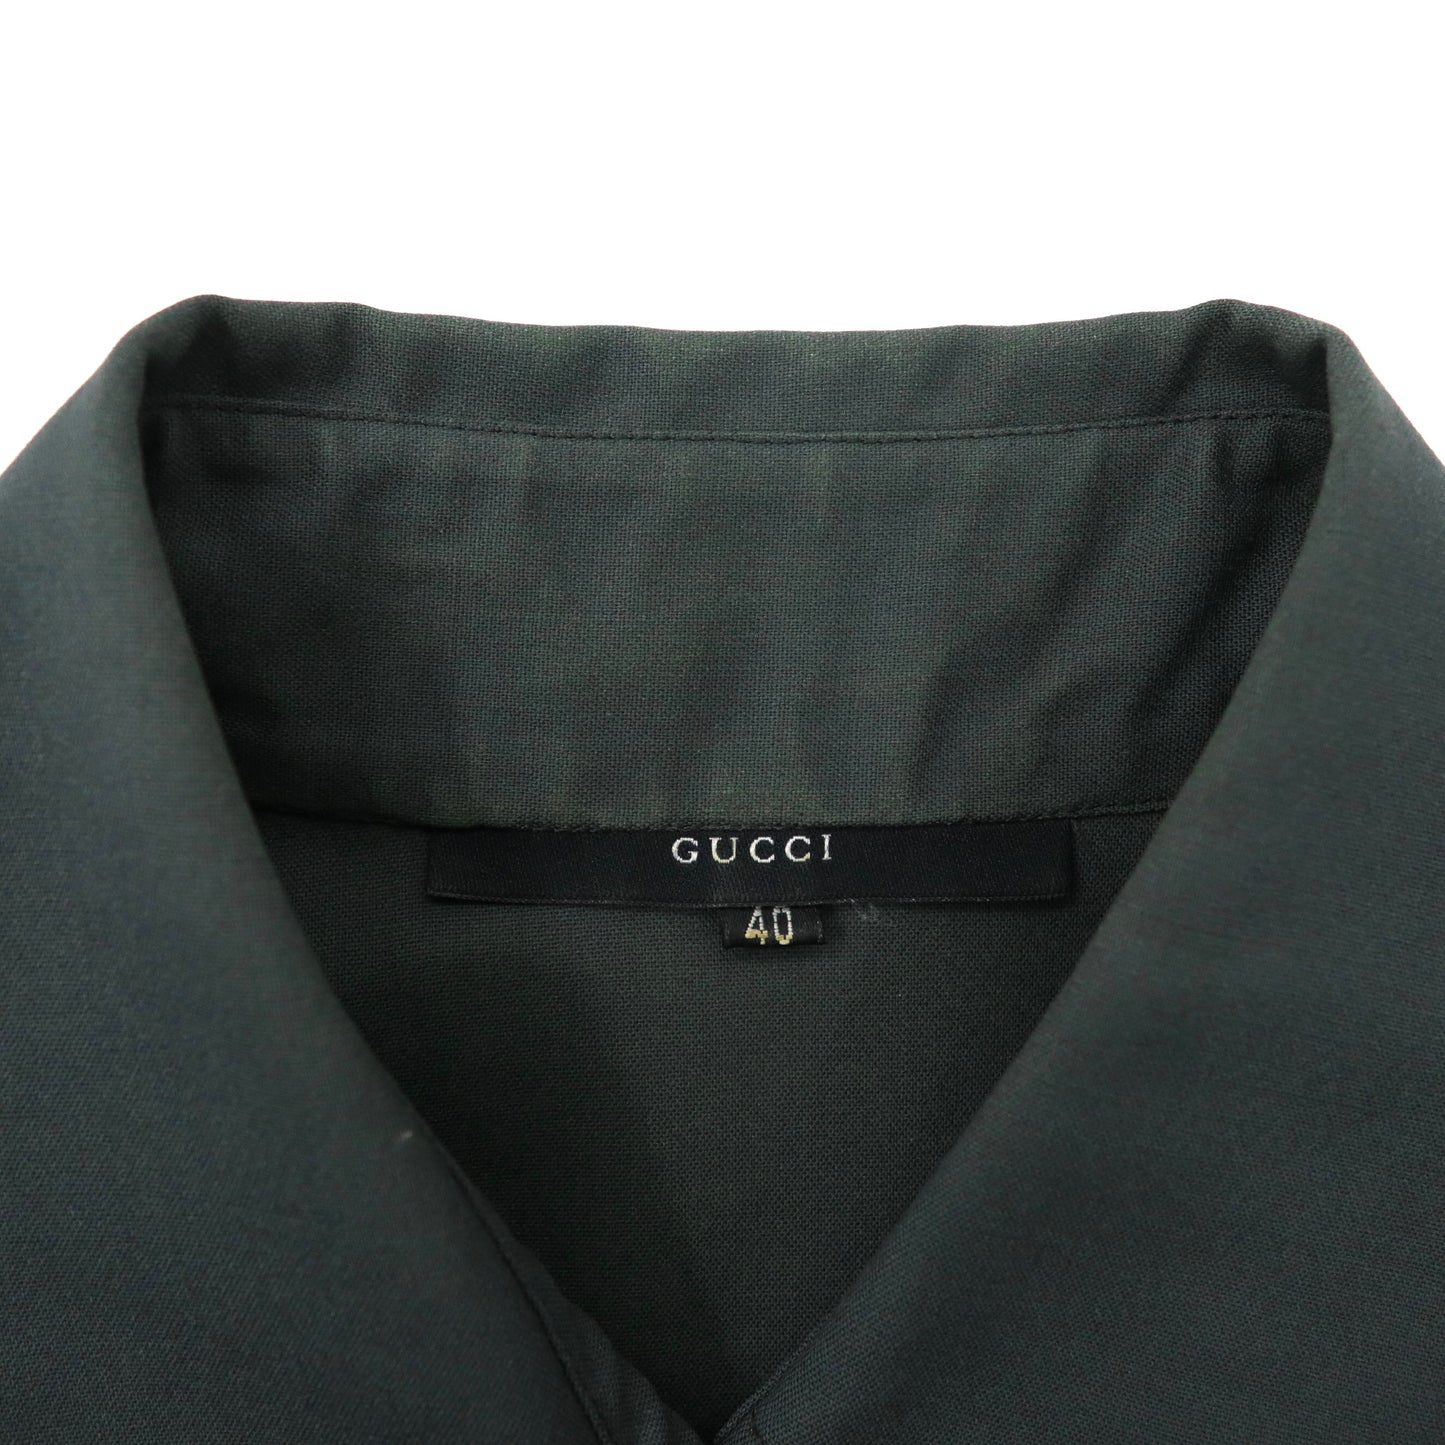 GUCCI ドレスシャツ 40 グレー ウール カシミヤ混 ストレッチ 0209 / VG707 イタリア製